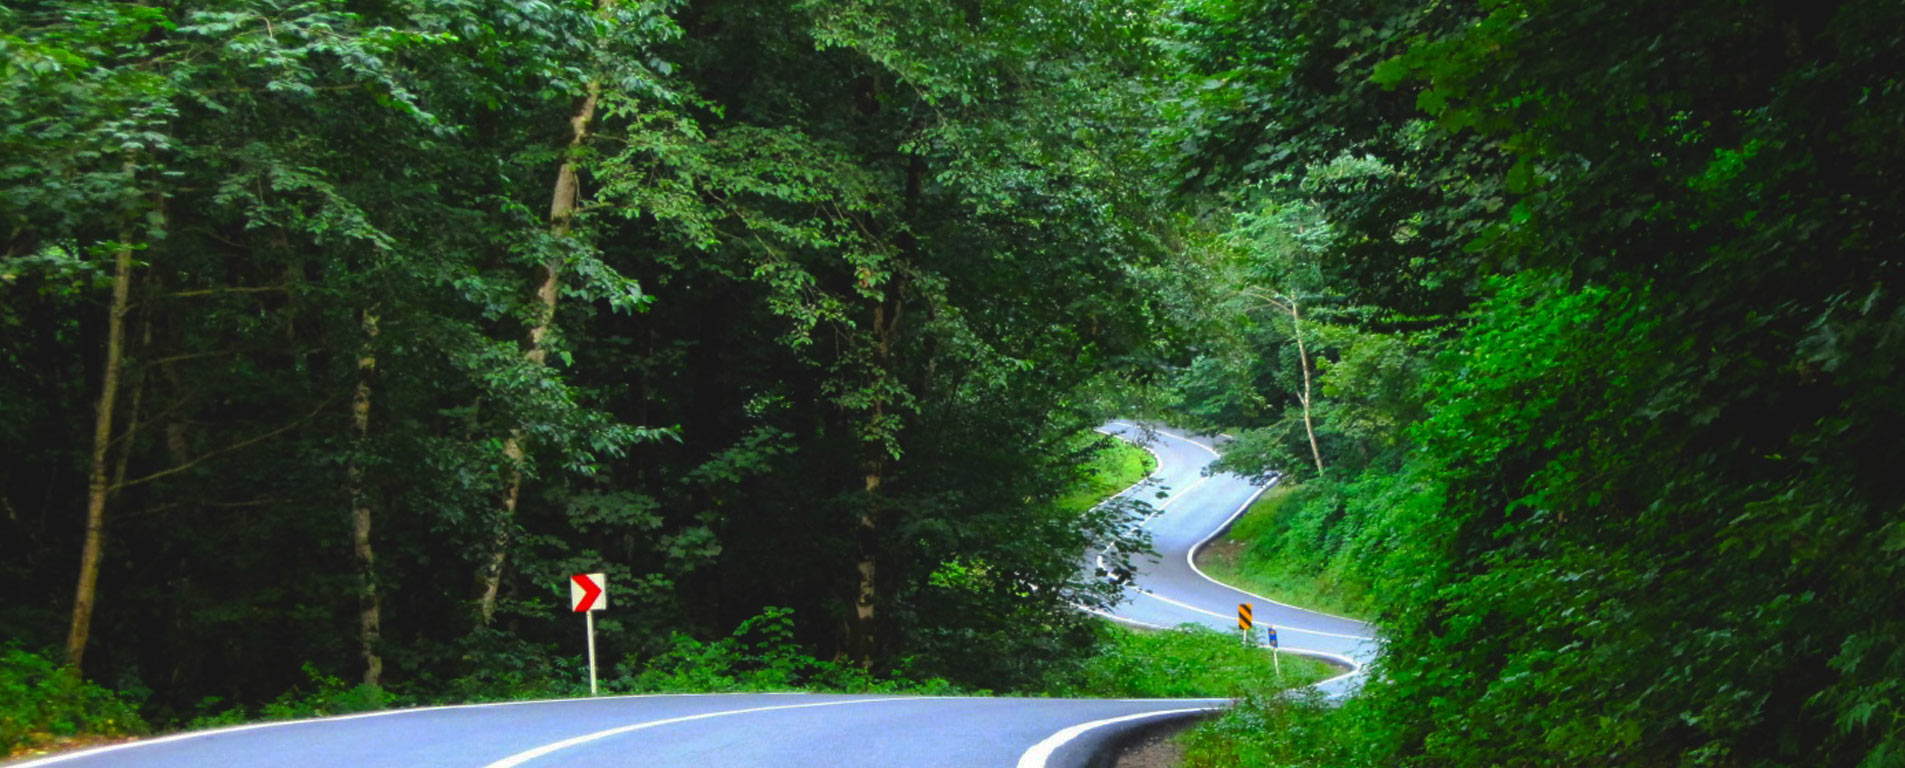 جاده کرج – چالوس با طبیعتی بکر، یکی از زیباترین جاده های جهان